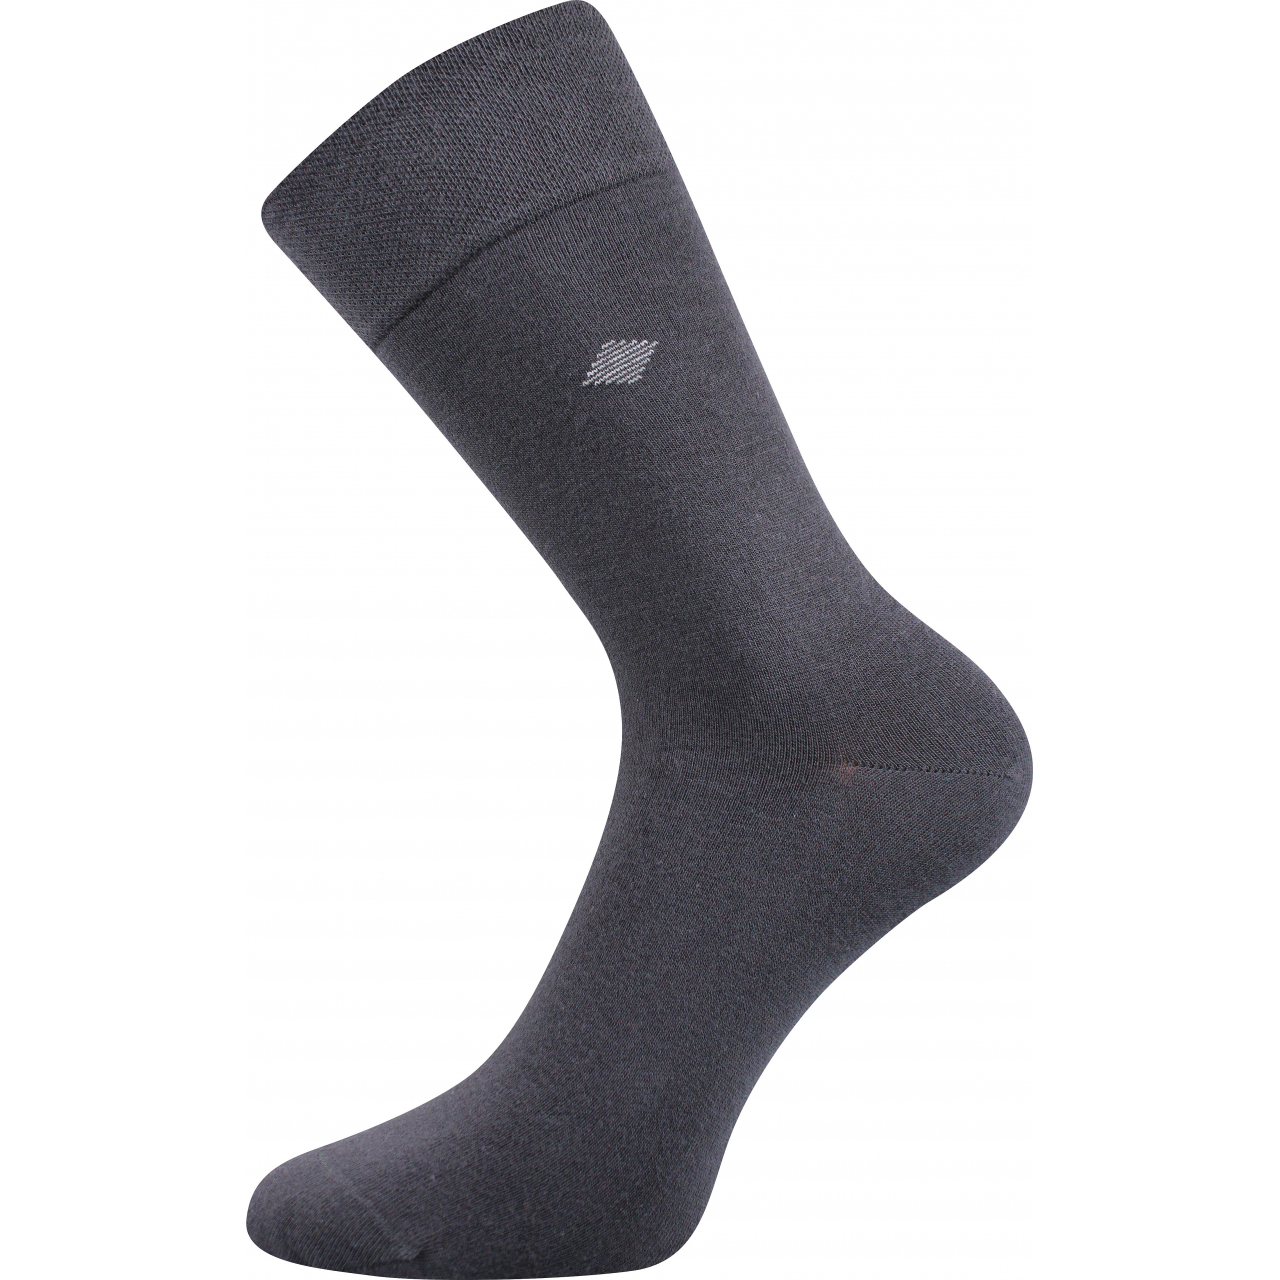 Ponožky pánské společenské Lonka Diagon - tmavě šedé, 39-42